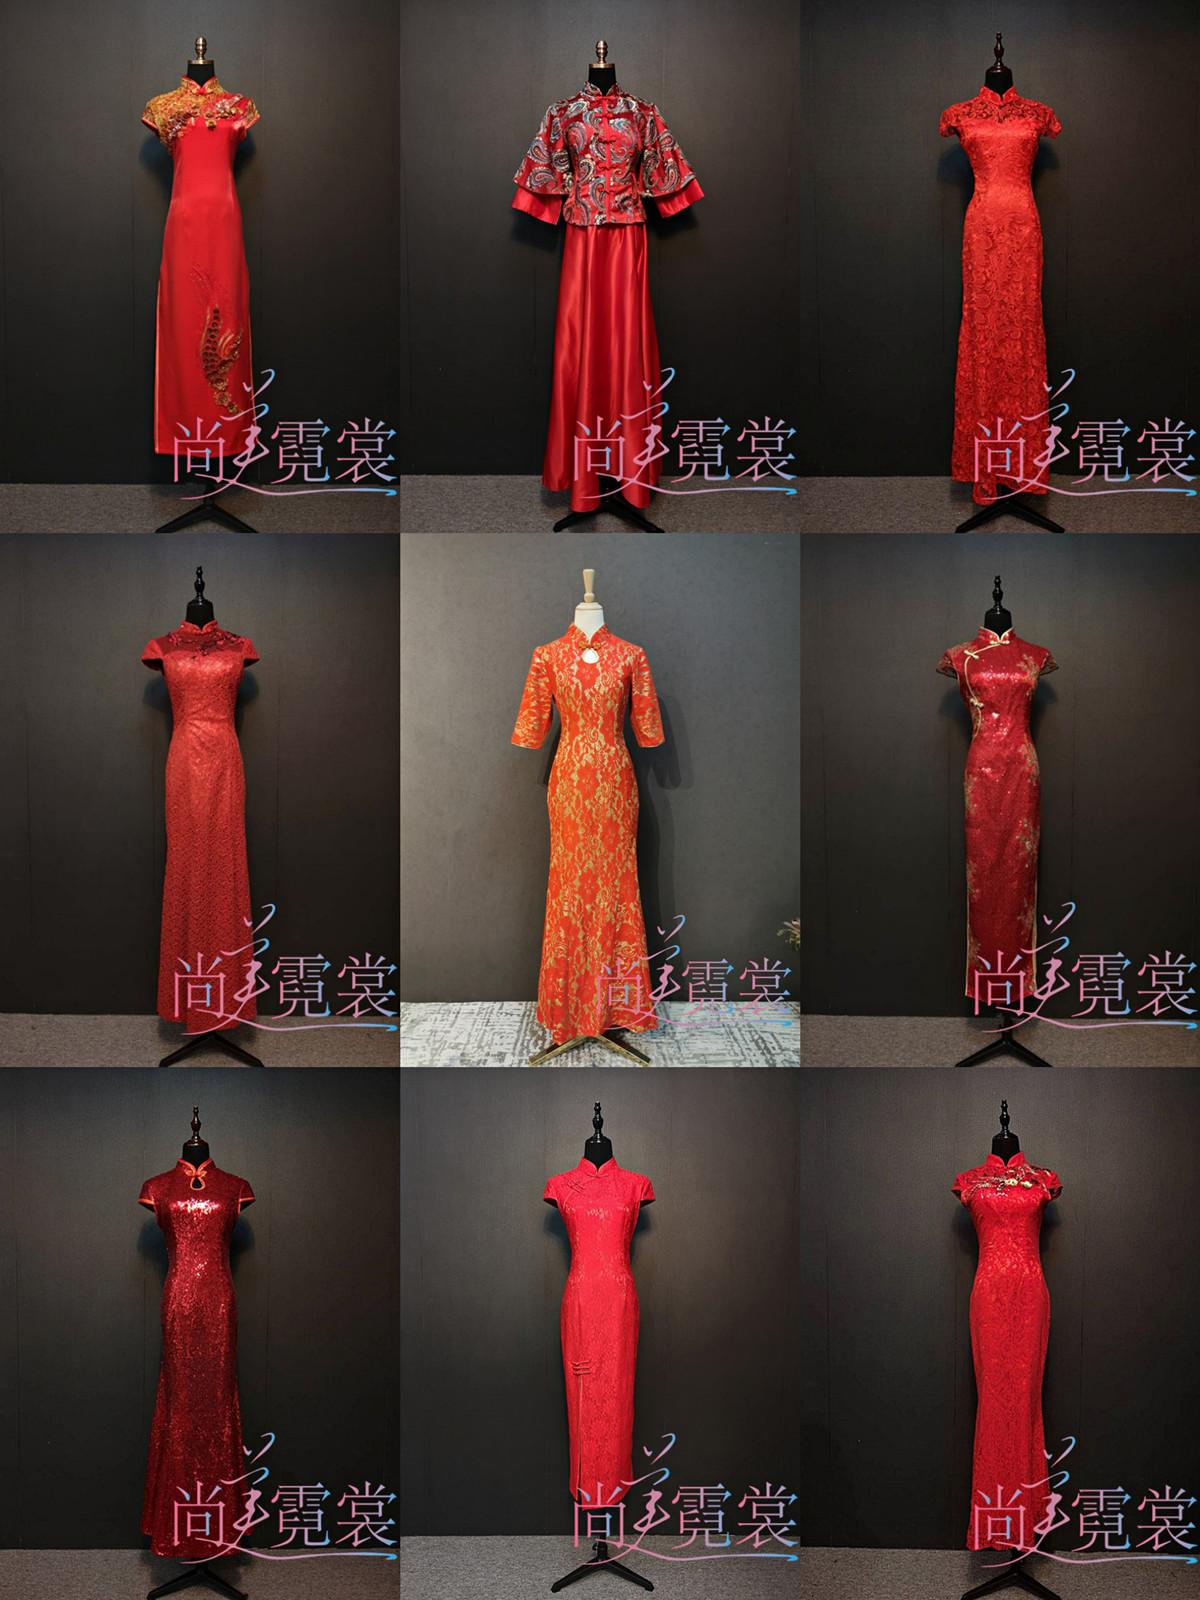 出租礼仪旗袍迎宾小姐复古红色礼服开业剪彩中式中国风亮片旗袍